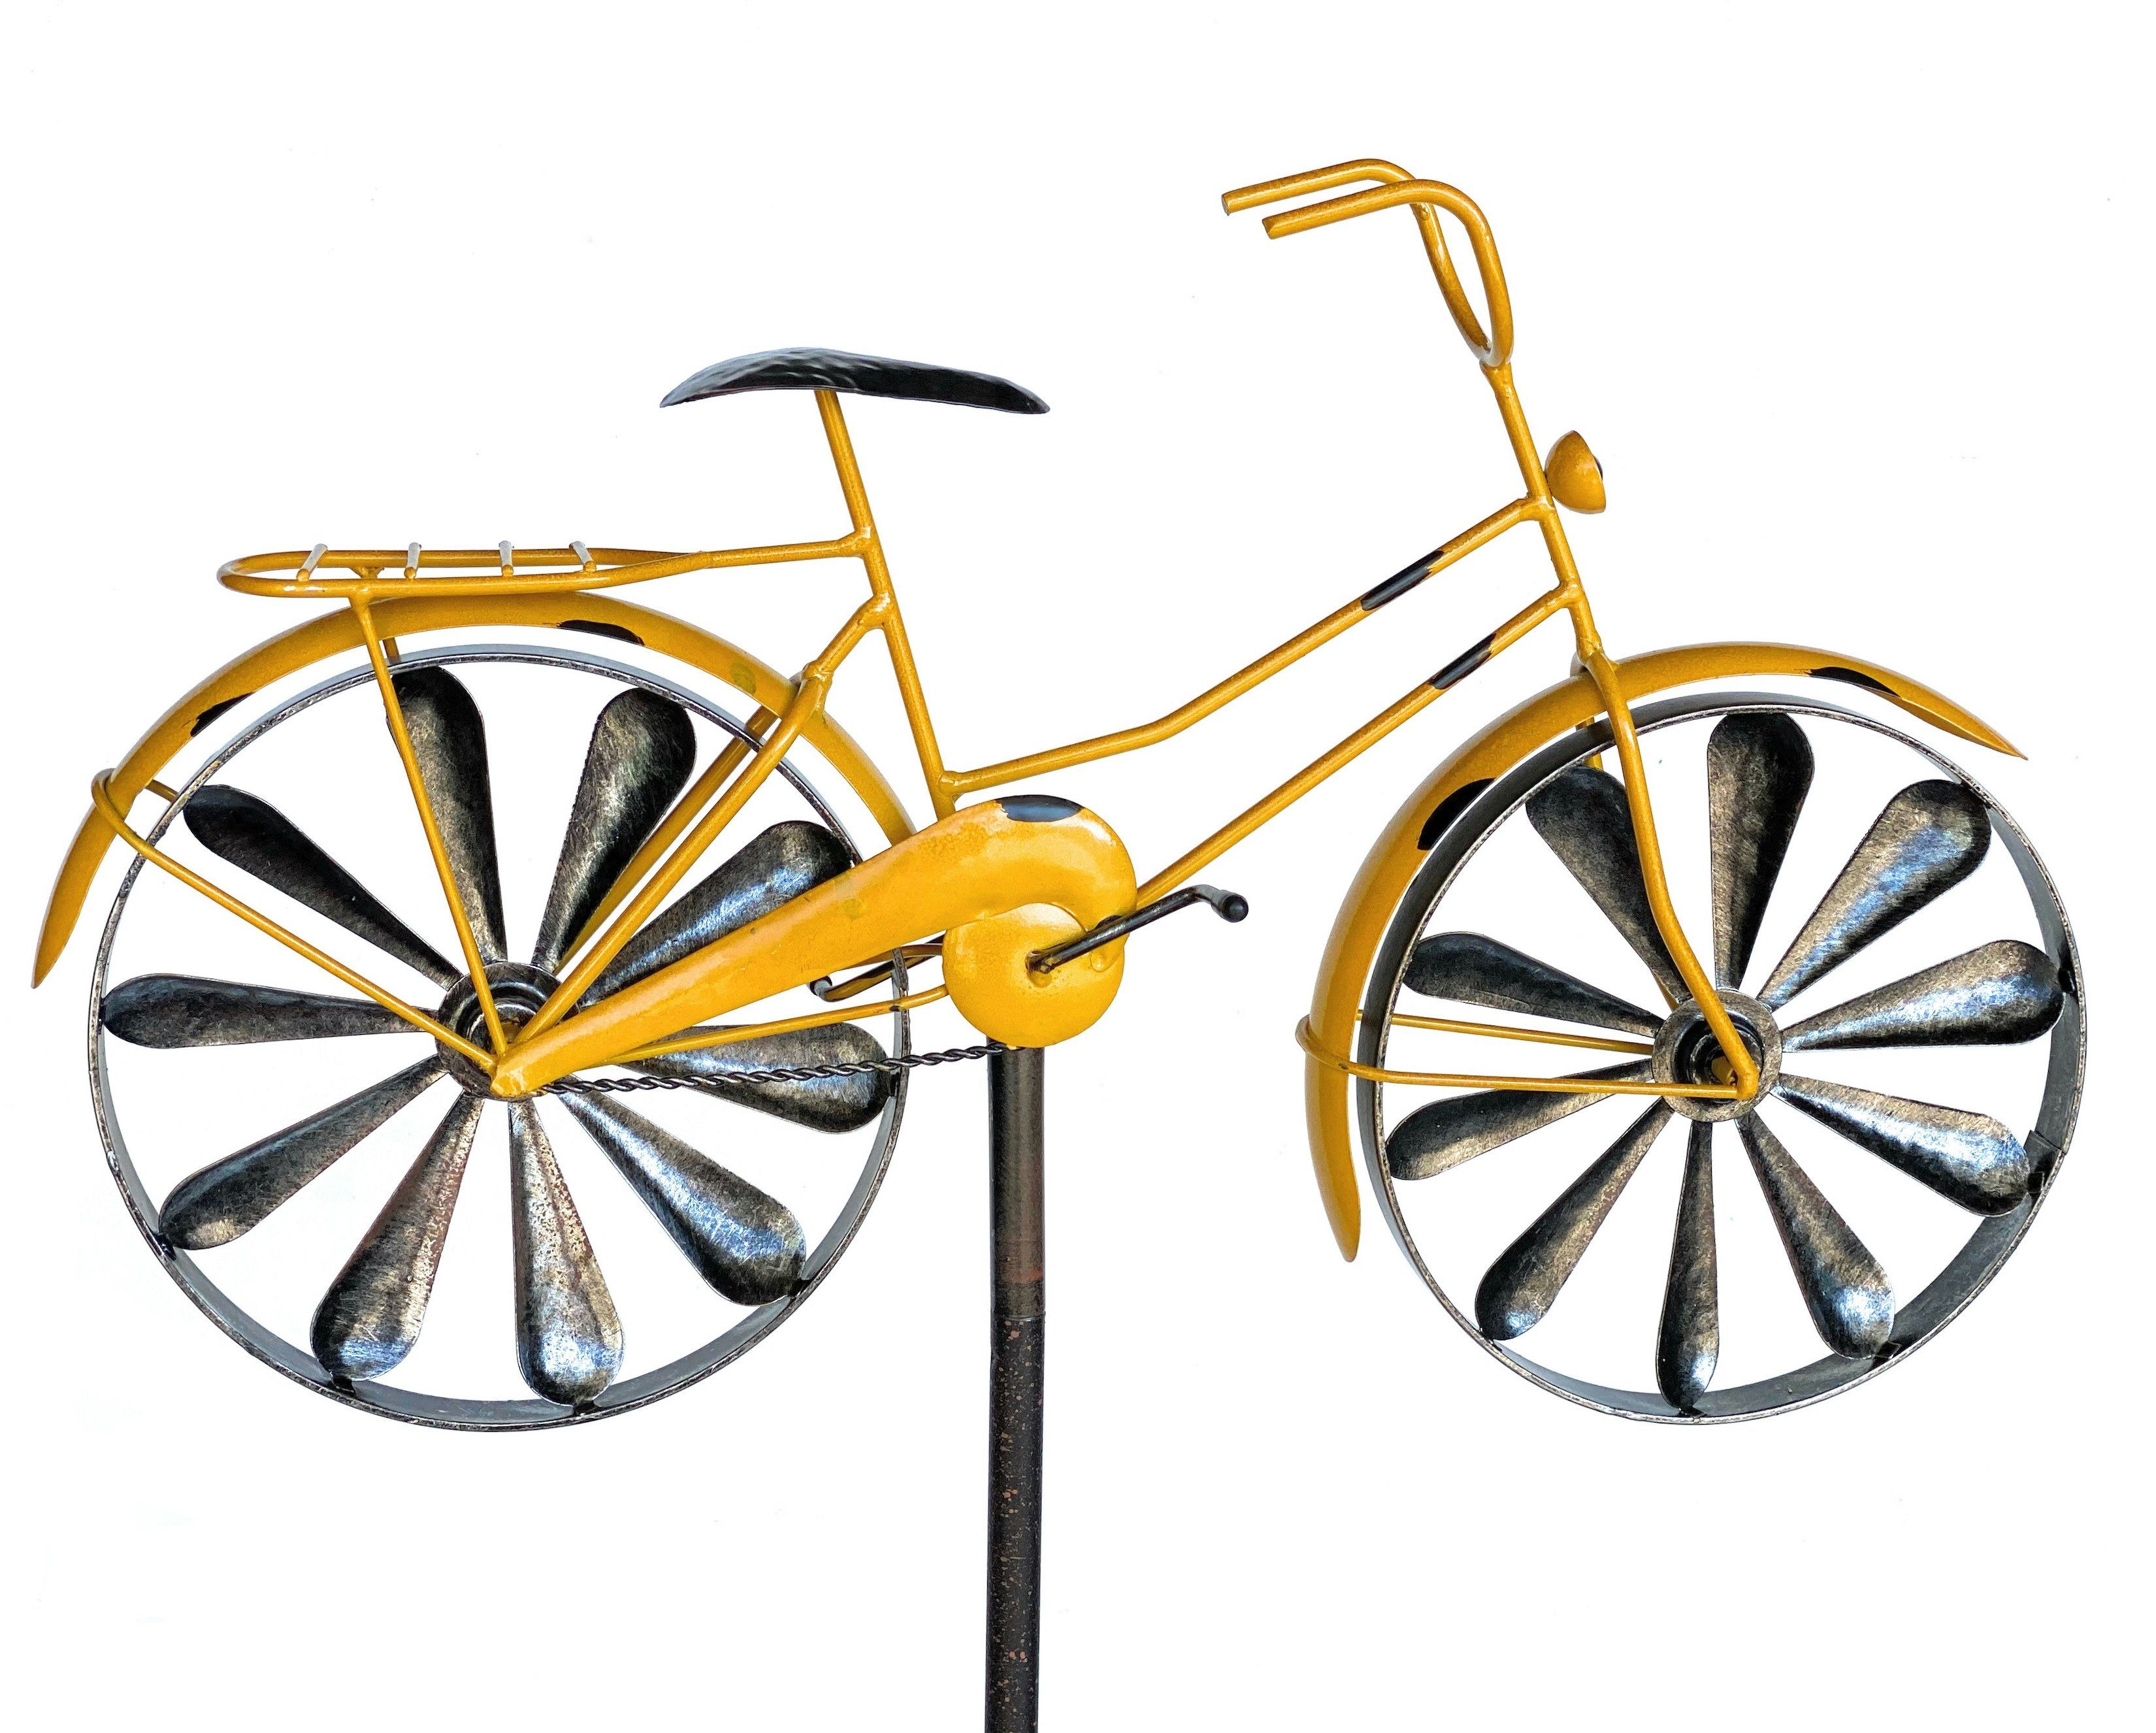 DanDiBo Gartenstecker Gartenstecker Metall Fahrrad XL 160 cm Gelb 96101 Shabby Windspiel Windrad Wetterfest Gartendeko Garten Gartenstab Bodenstecker